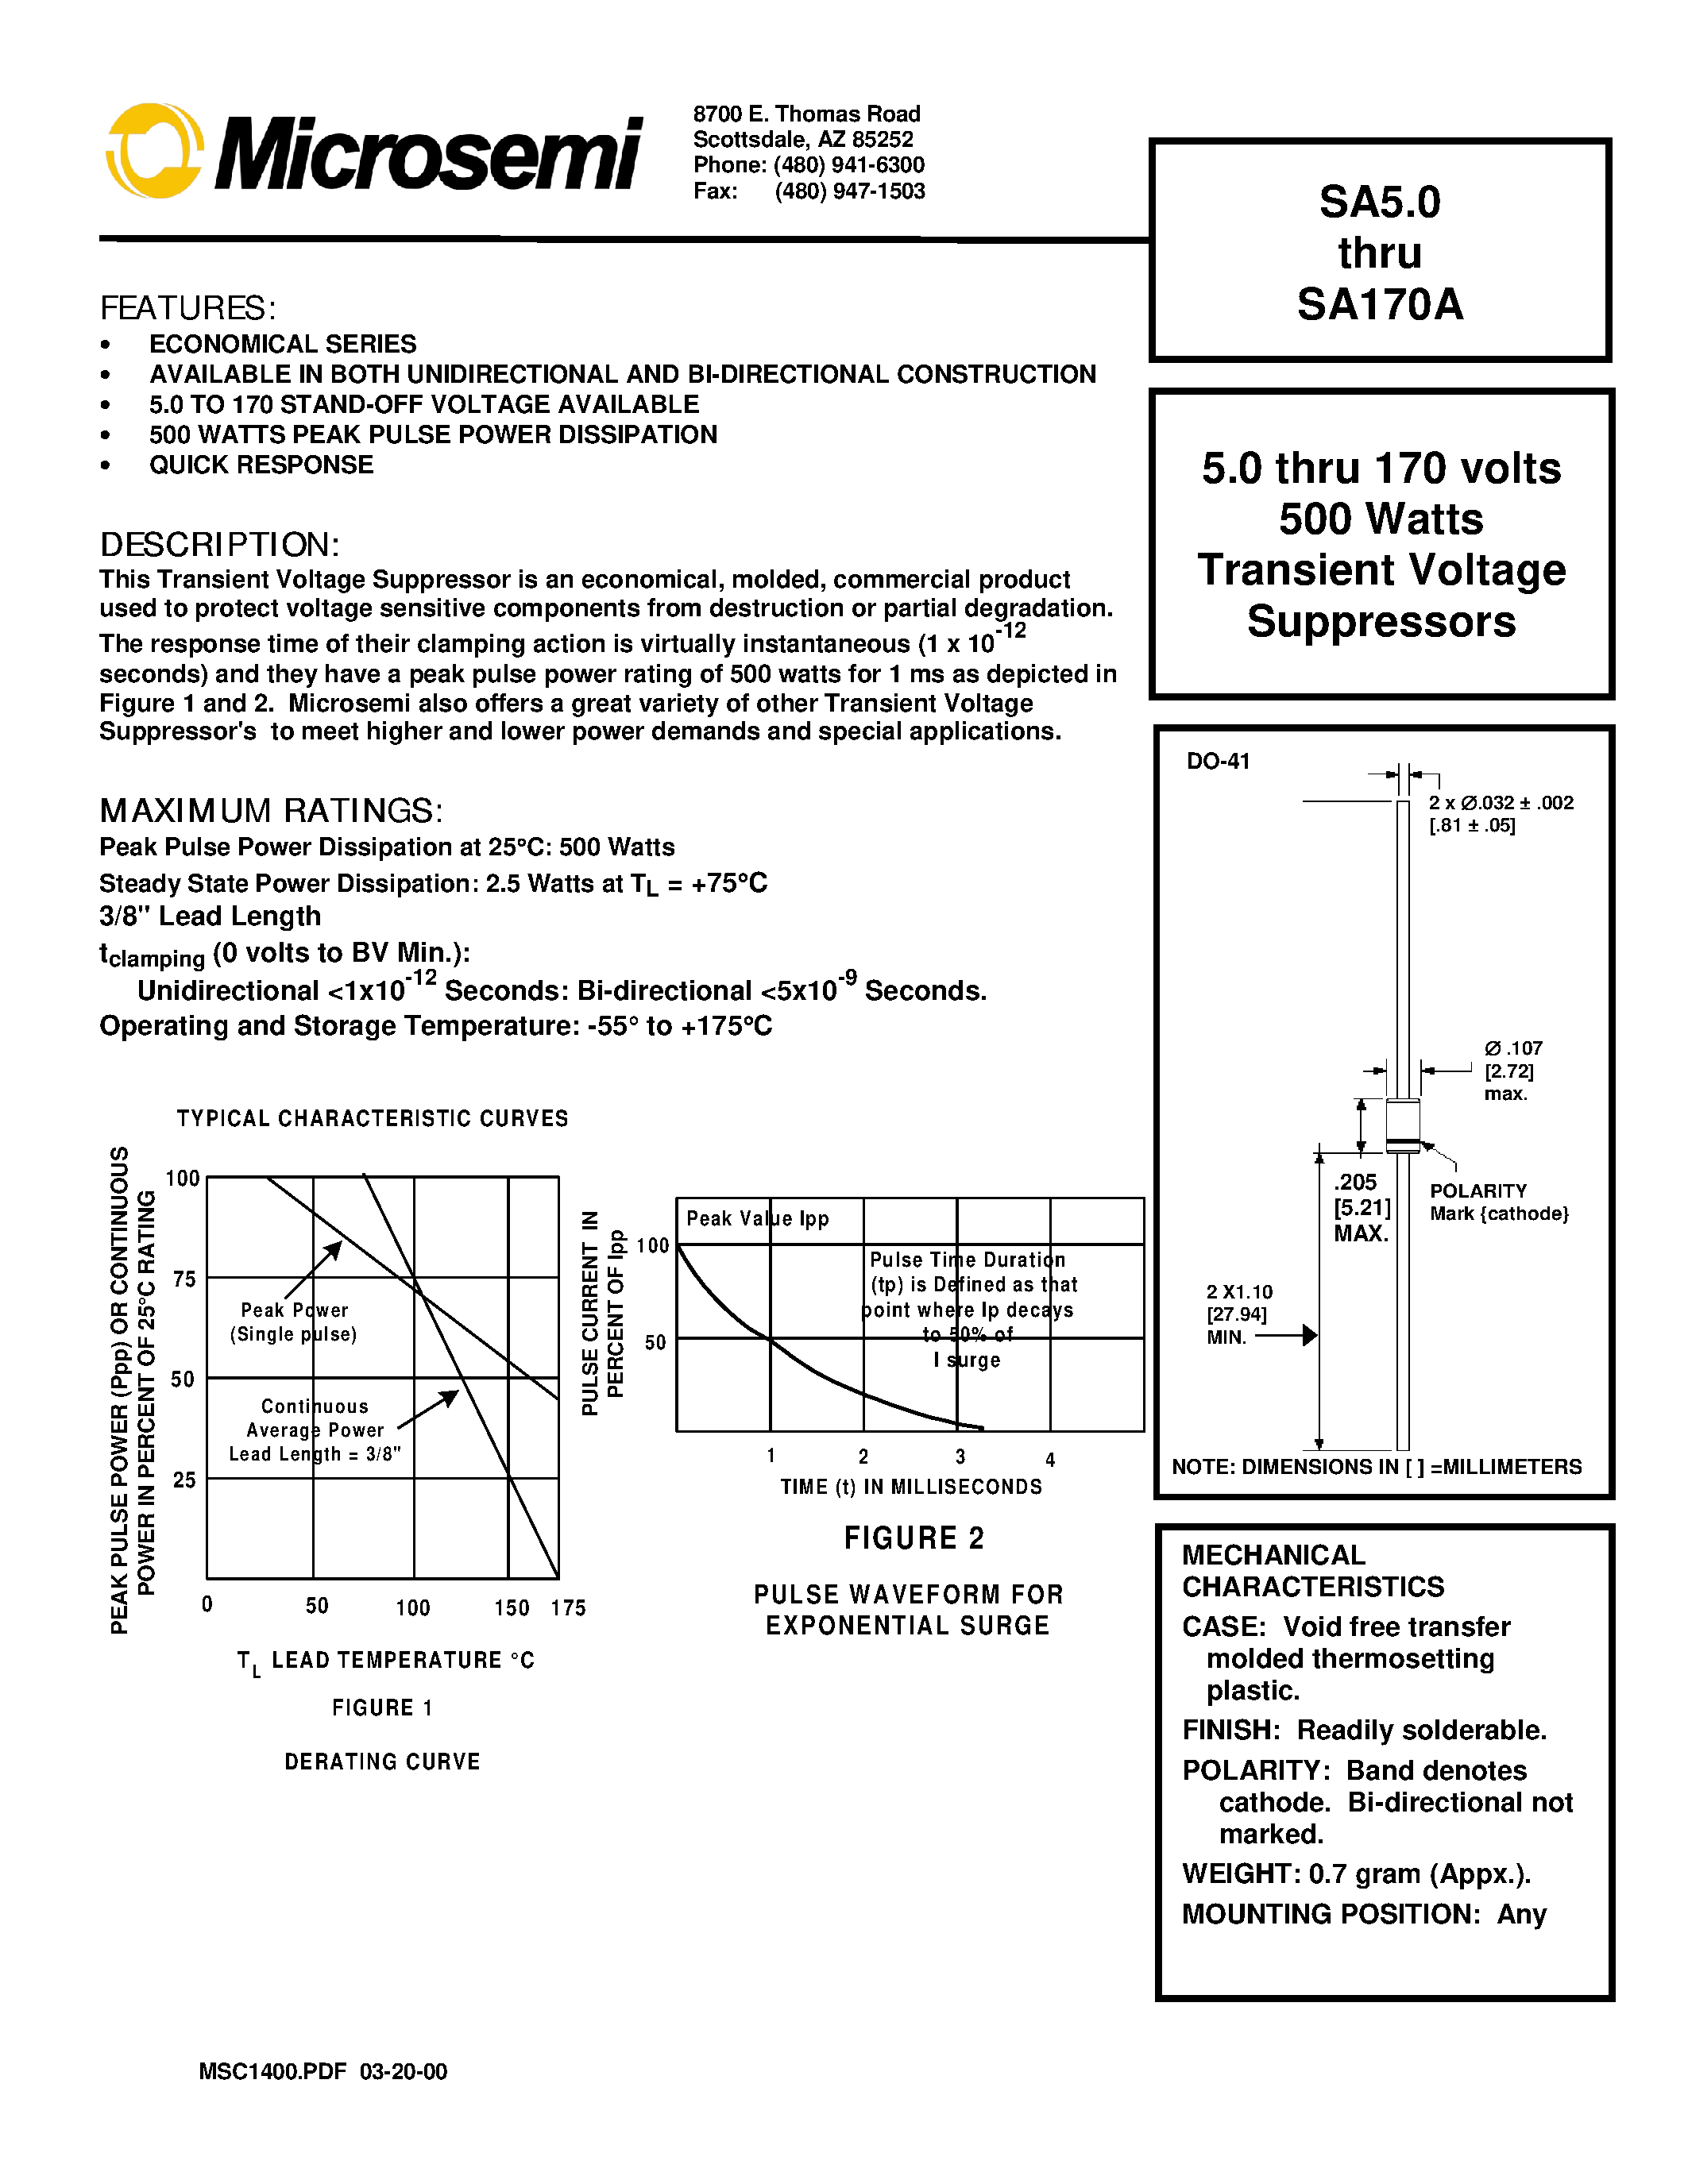 Datasheet SA30 - 5.0 thru 170 volts 500 Watts Transient Voltage Suppressors page 1